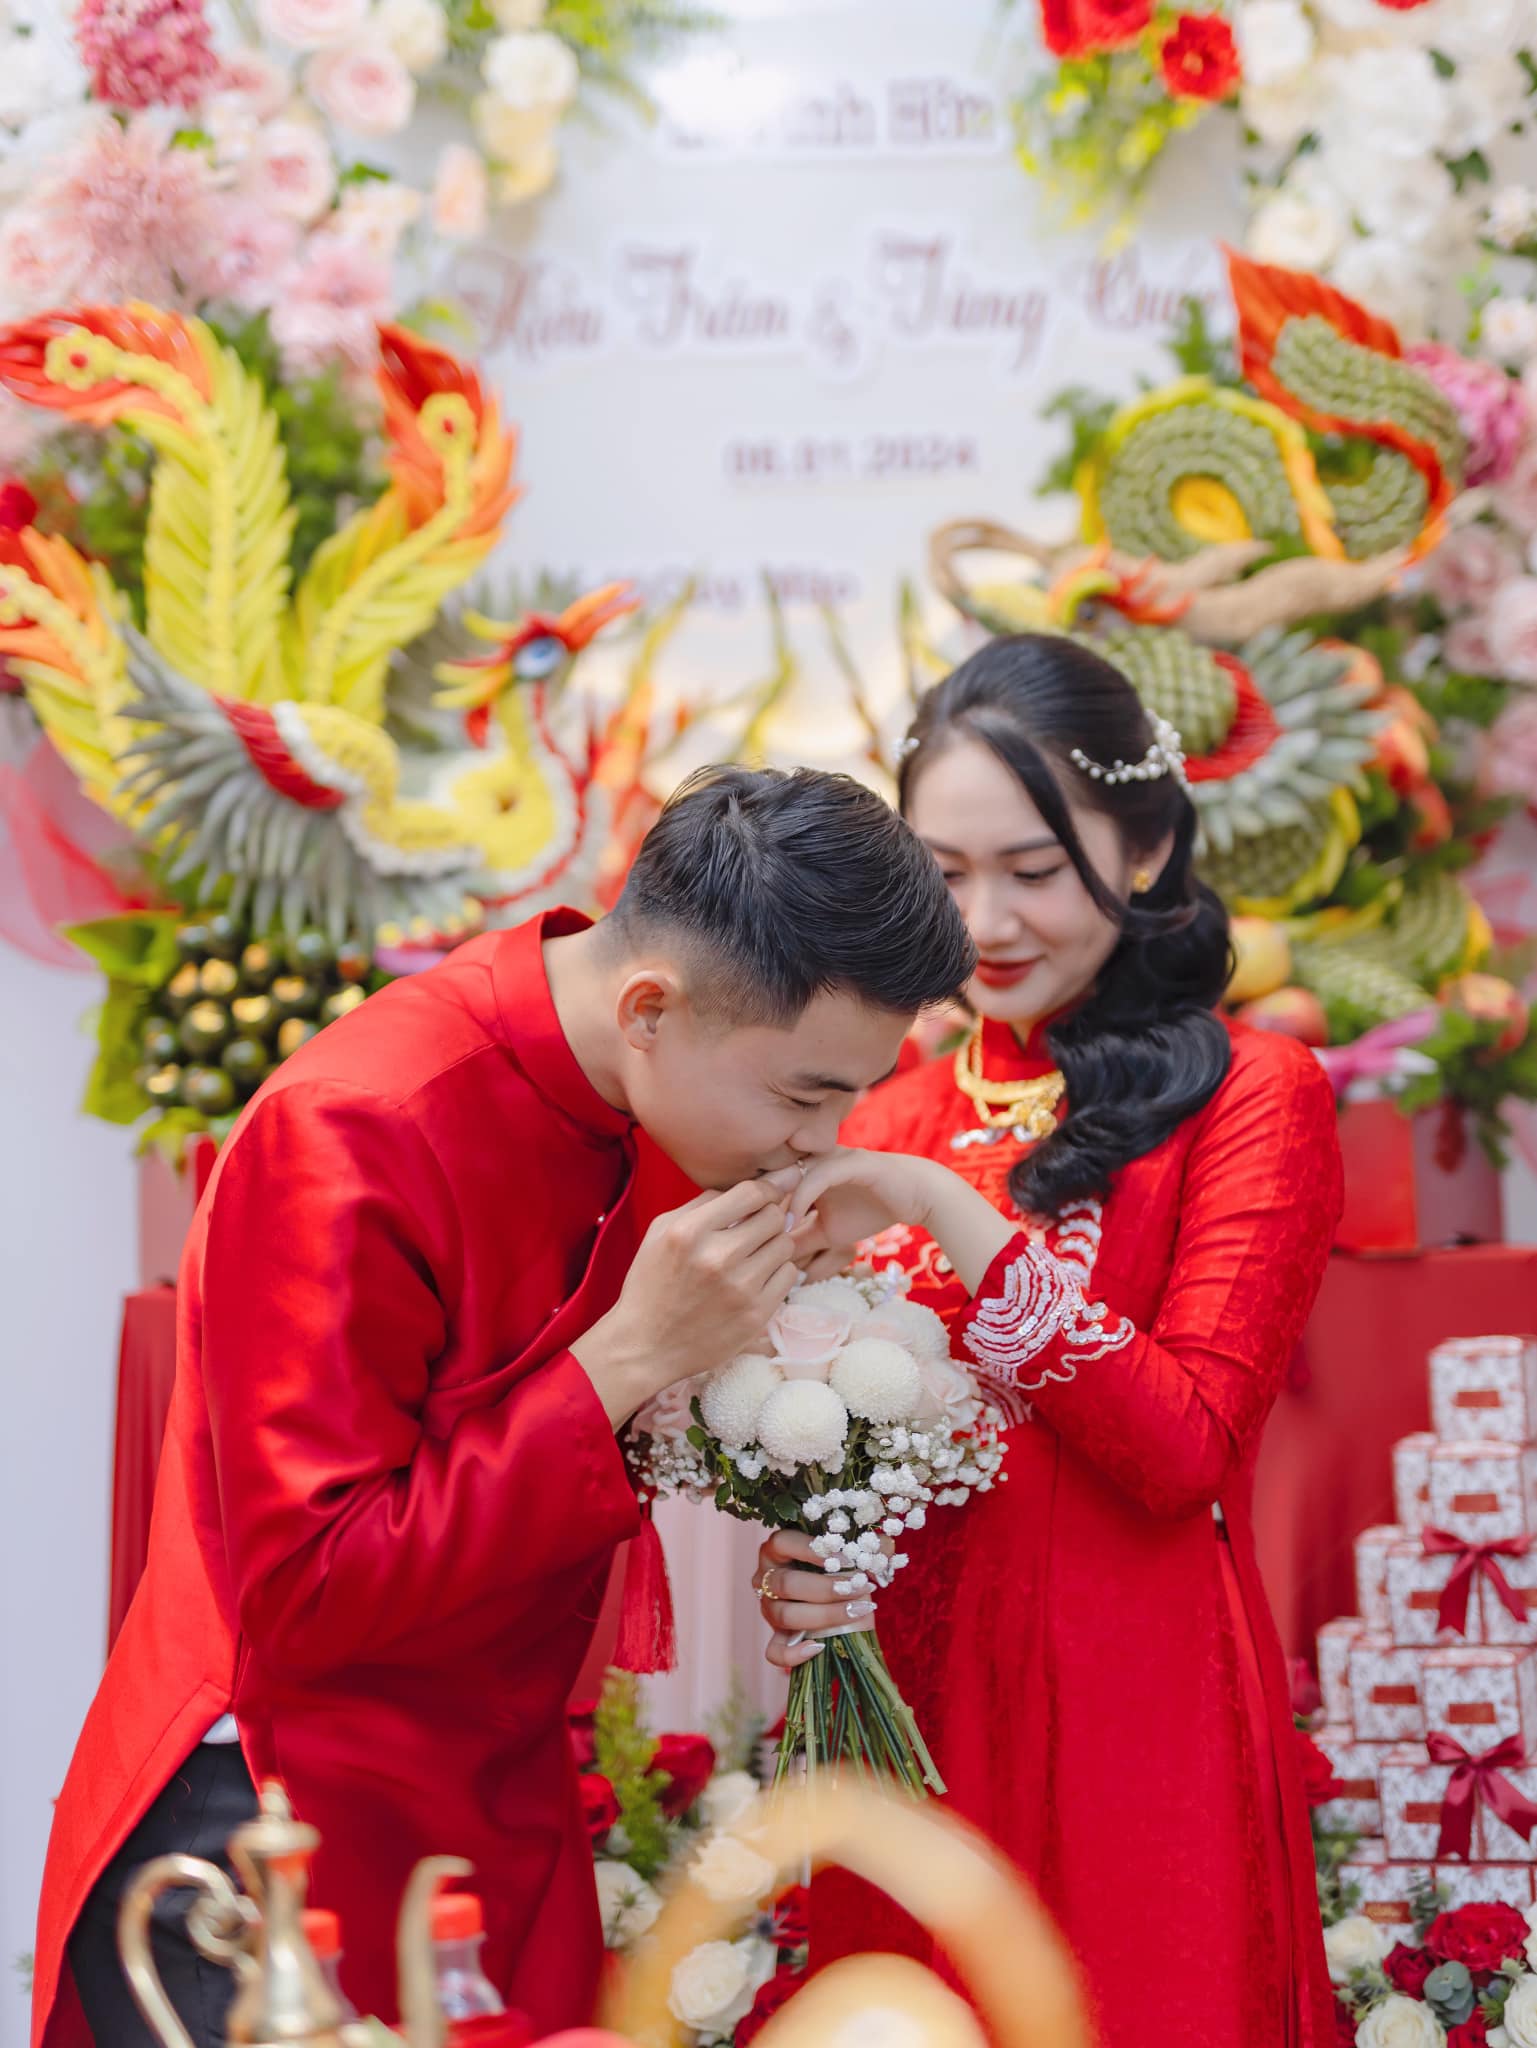 Hậu vệ đội tuyển Việt Nam tình tứ hôn vợ trong lễ ăn hỏi- Ảnh 2.